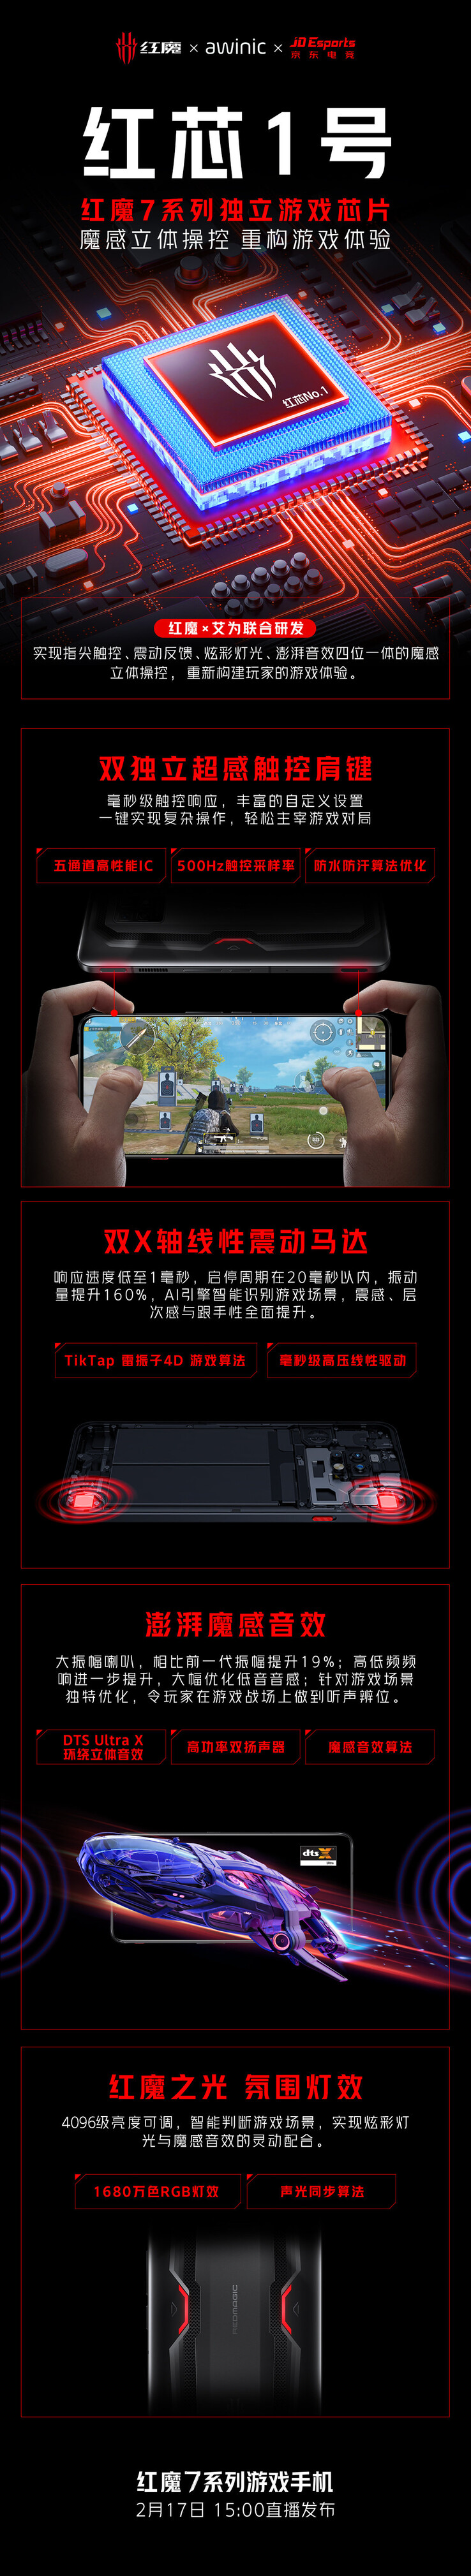 O Red Core 1 é tocado para fazer parte da série RedMagic 7 em seu lançamento. (Fonte: RedMagic via Weibo)